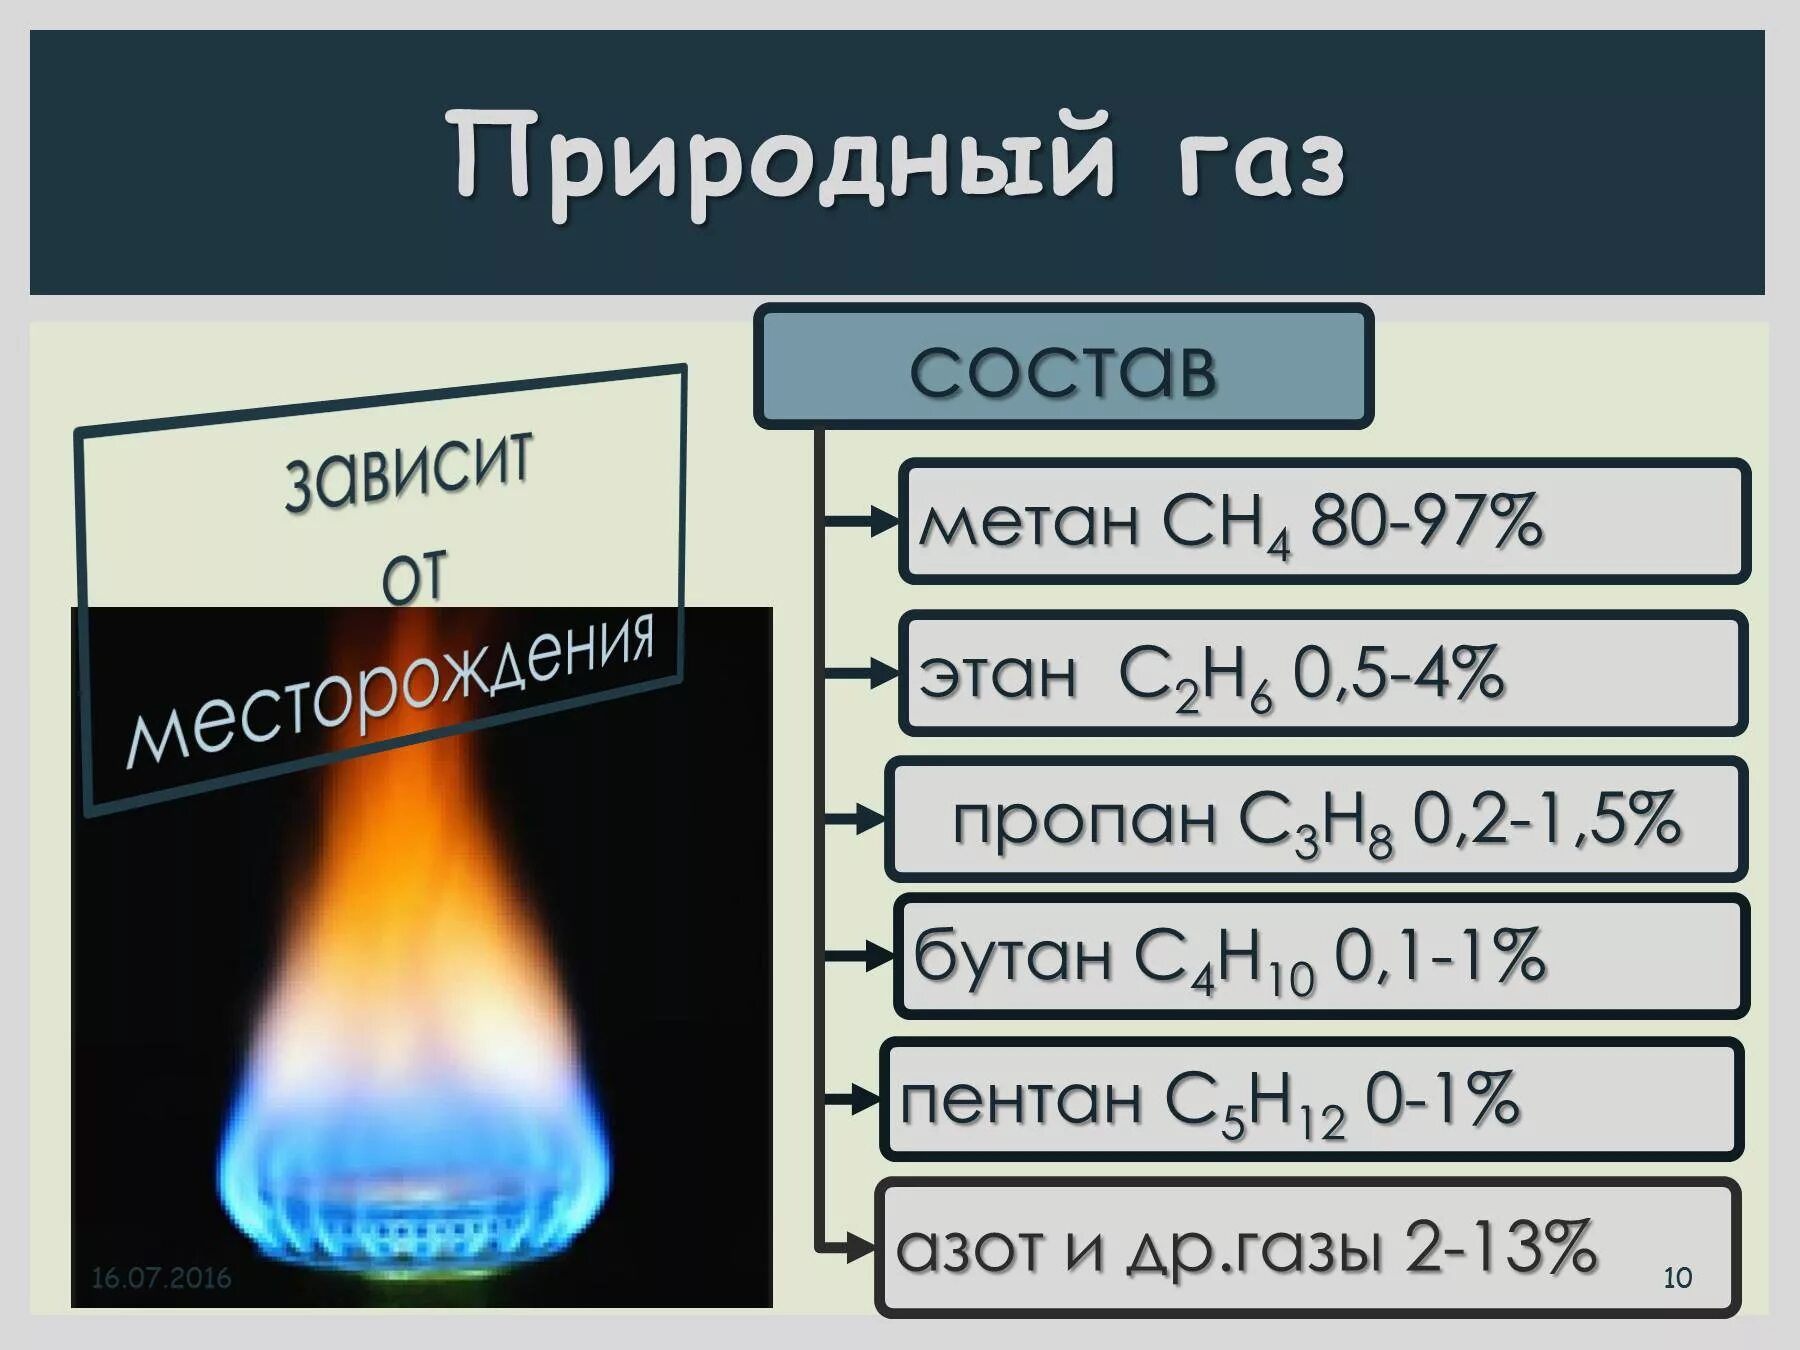 Природный газ форма